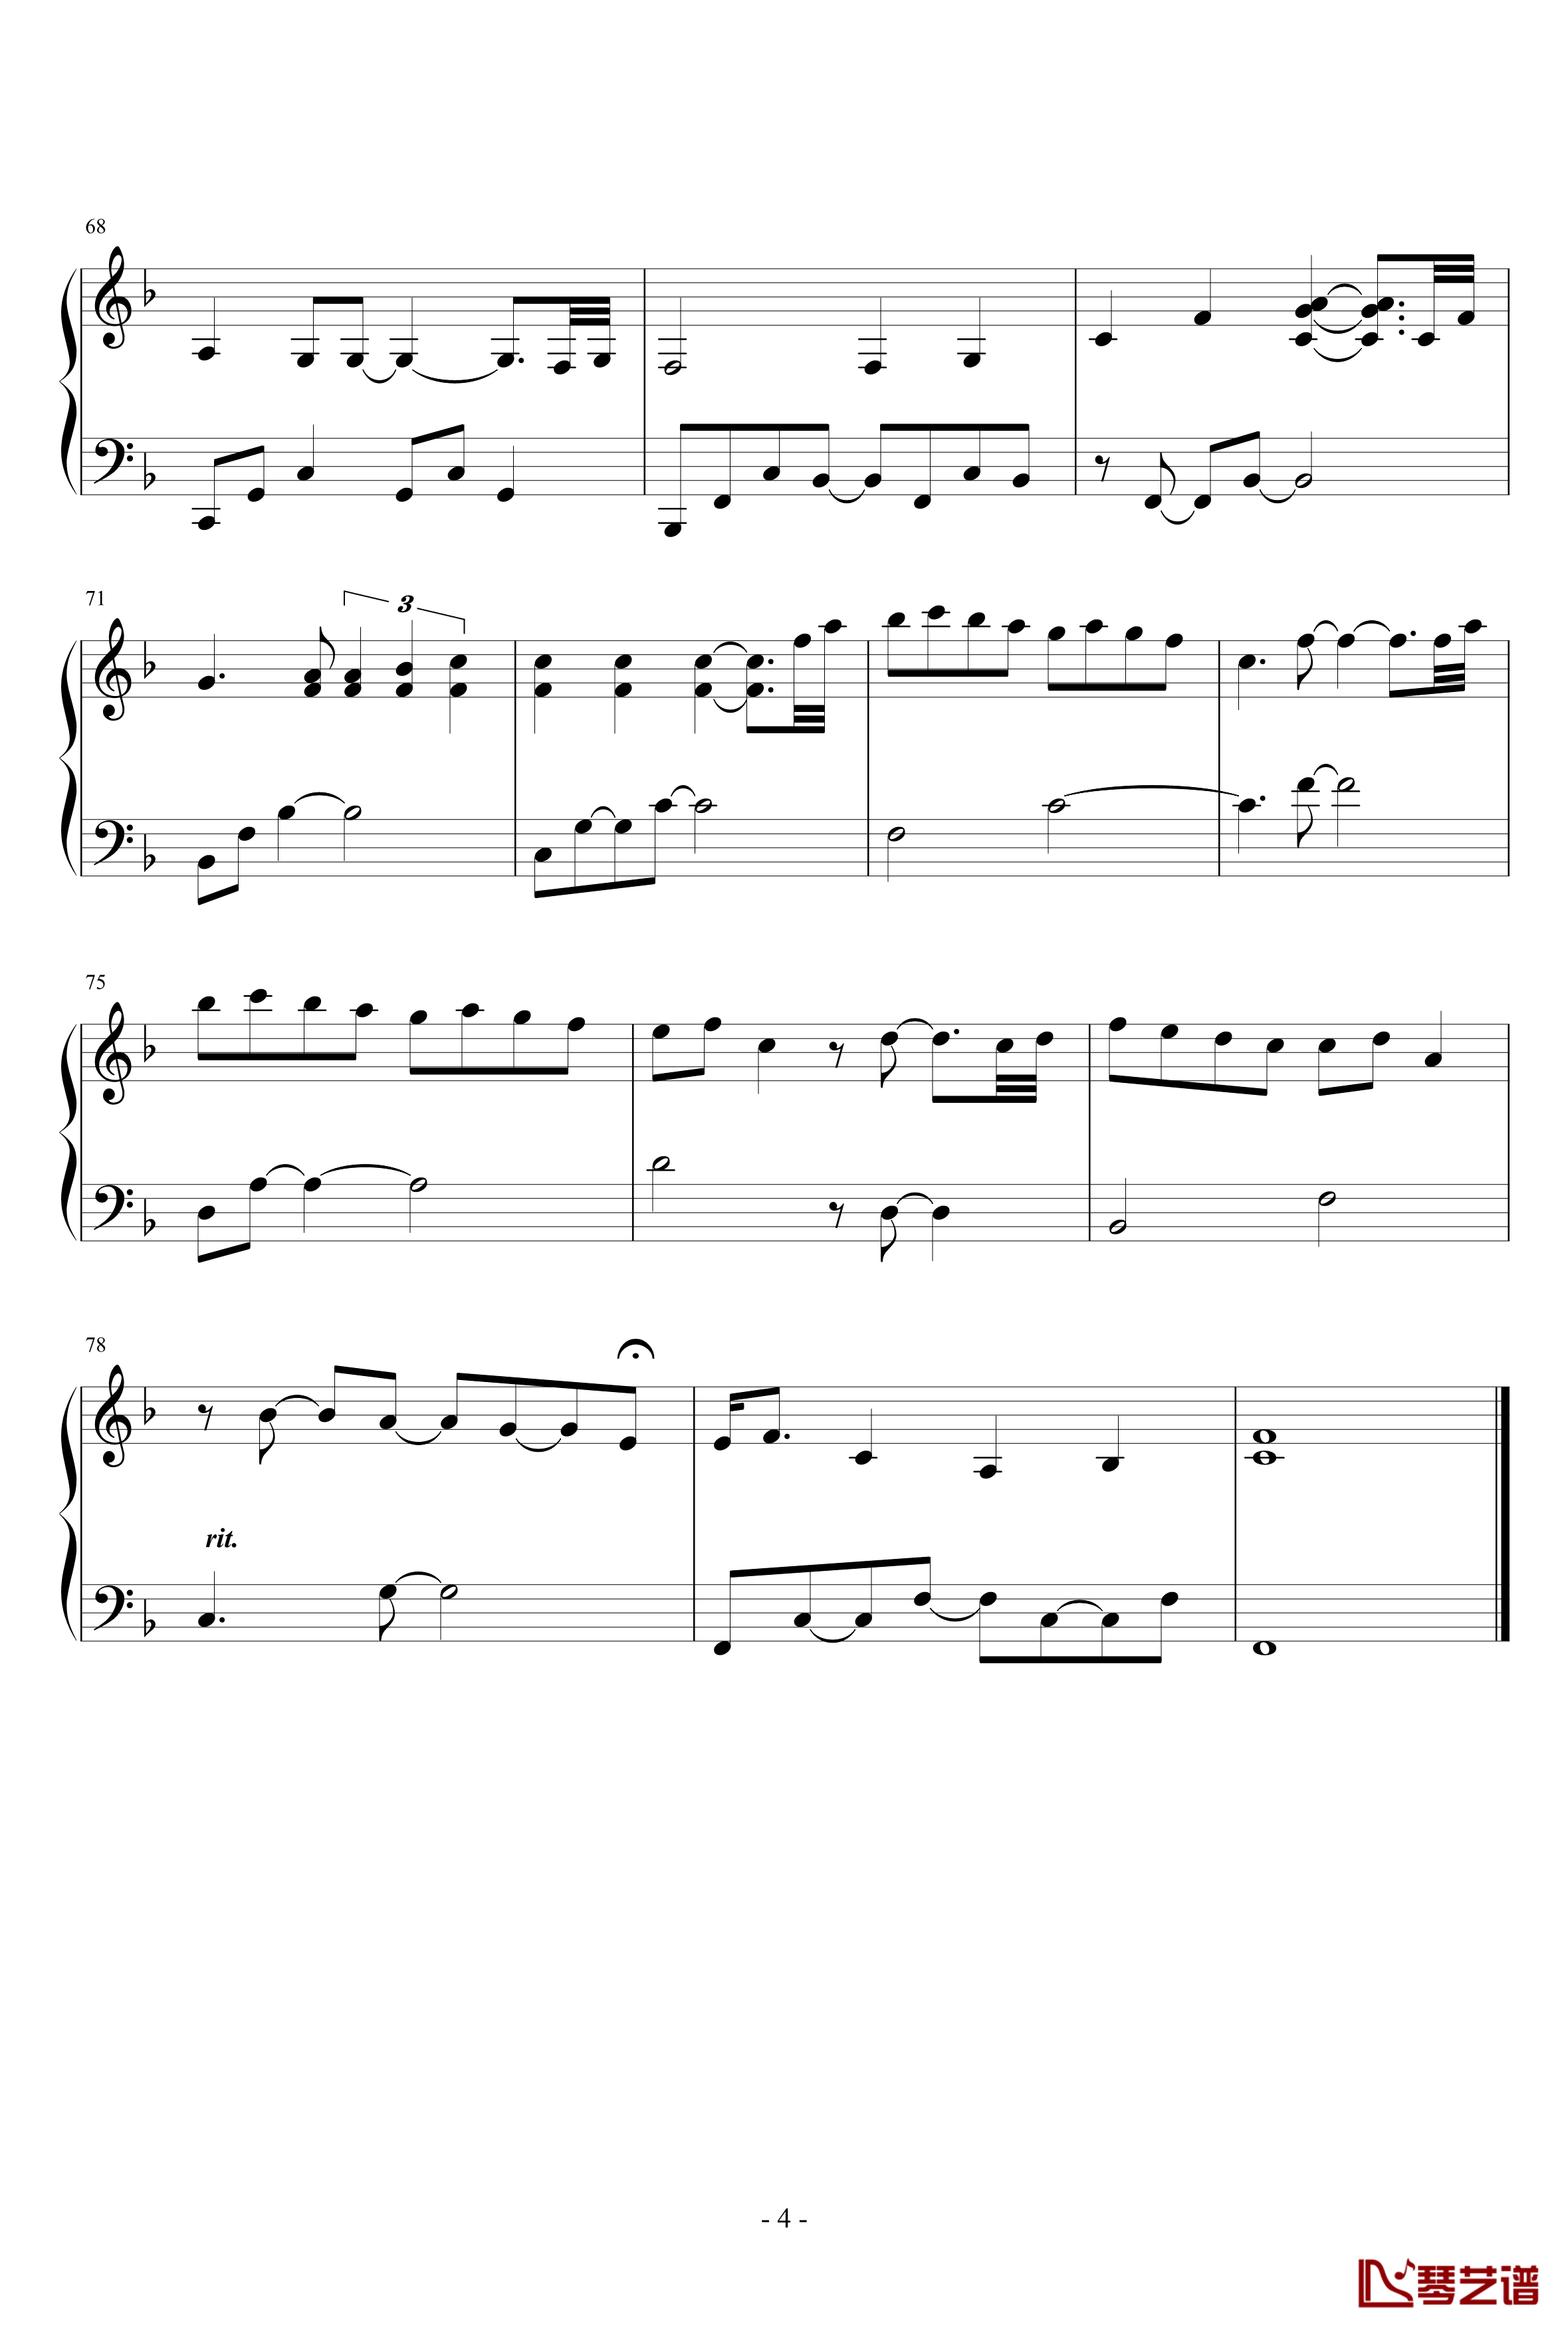 peacin out钢琴谱-REASONER